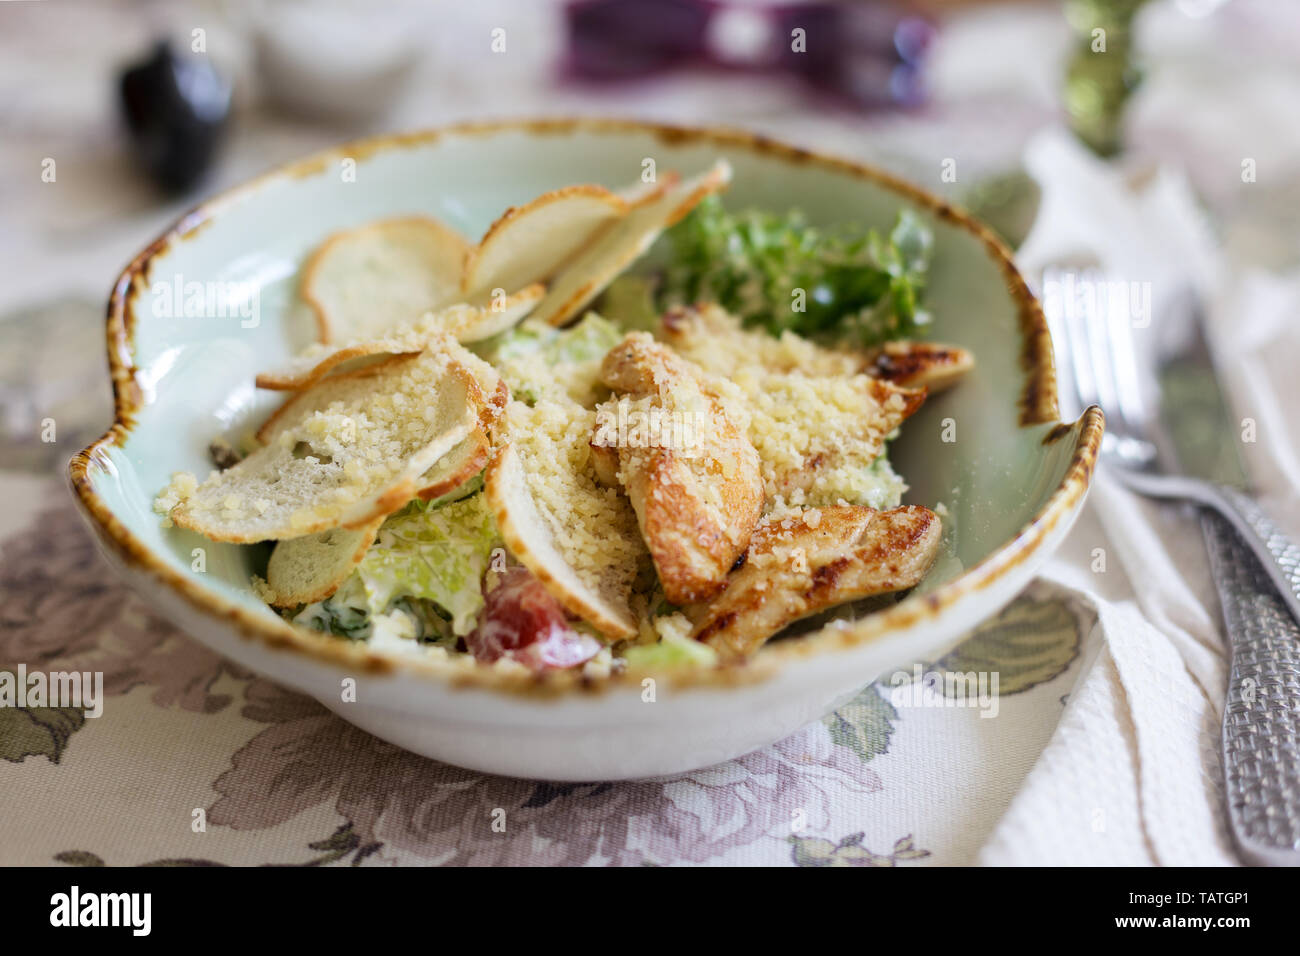 Salade césar avec poulet, romano, croûtons et d'herbes fraîches sur la table. Concept de l'alimentation d'été Banque D'Images